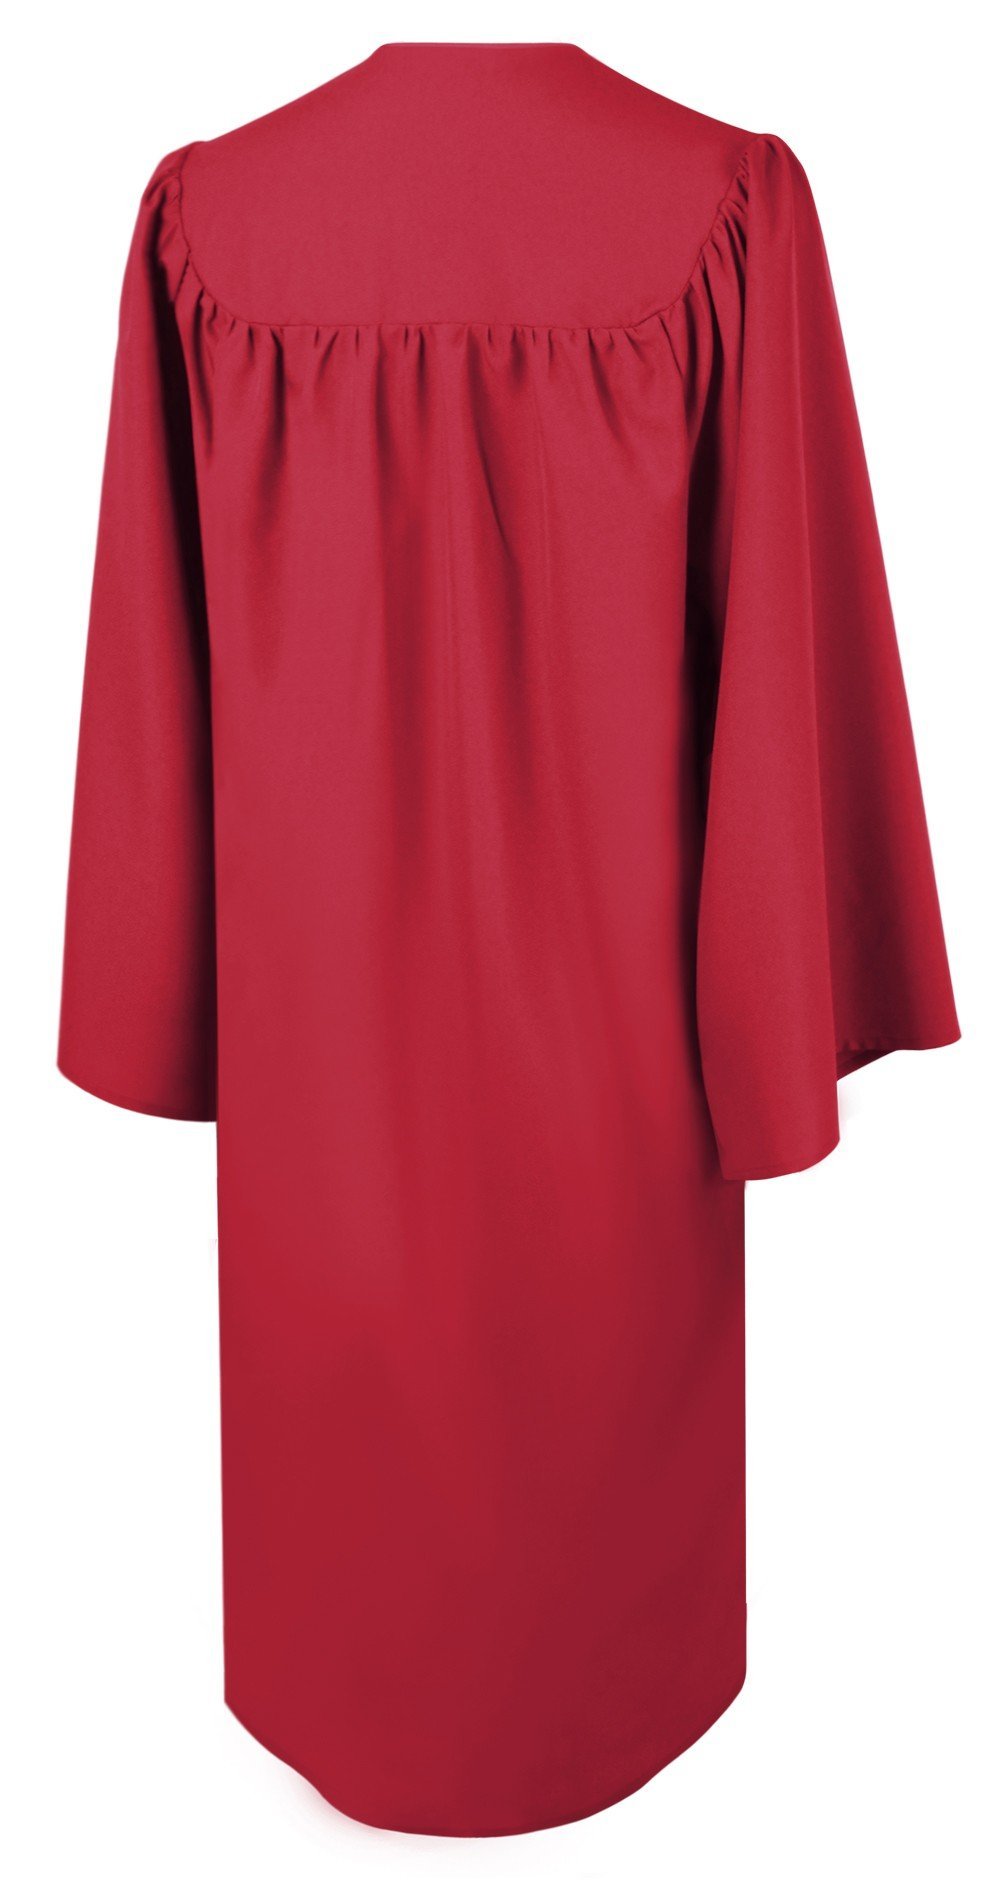 Matte Red Choir Robe - Church Choir Robes - ChoirBuy